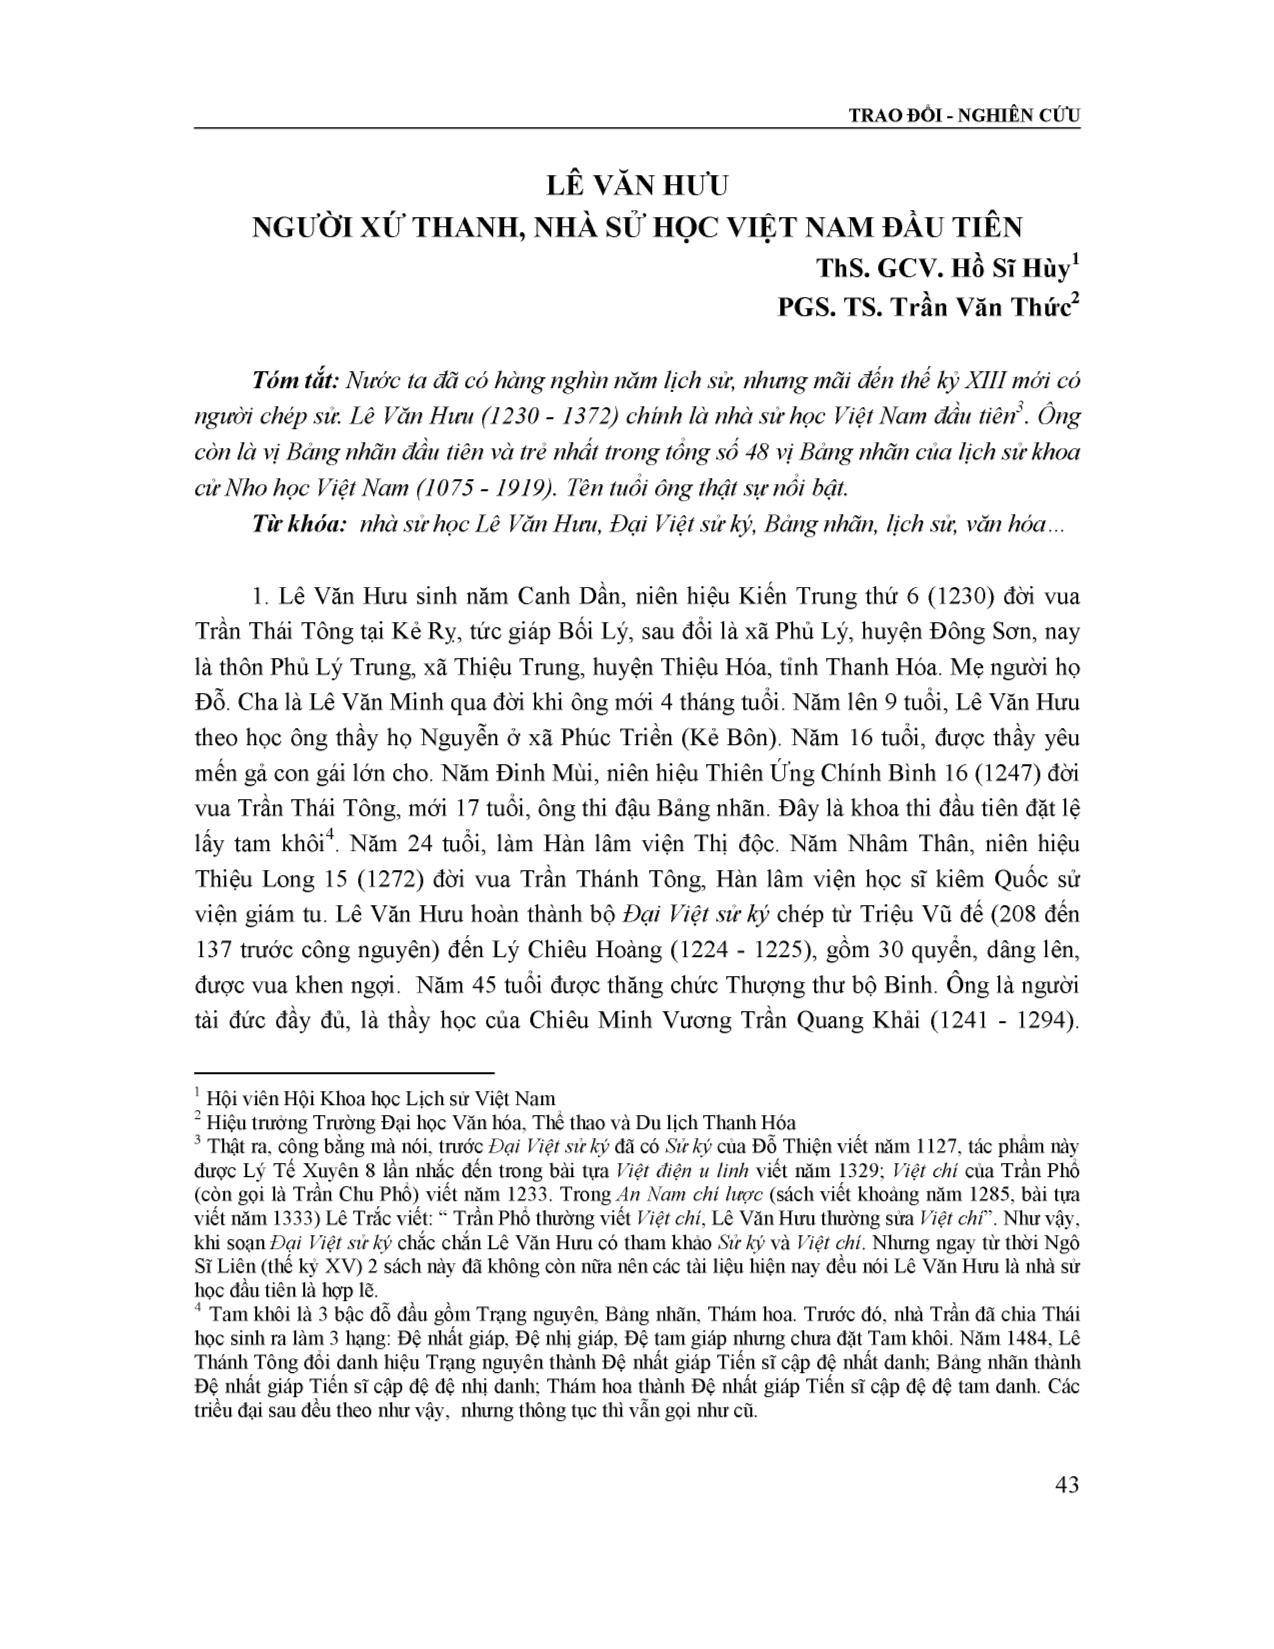 Lê Văn Hưu người xứ Thanh, nhà sử học Việt Nam đầu tiên trang 1